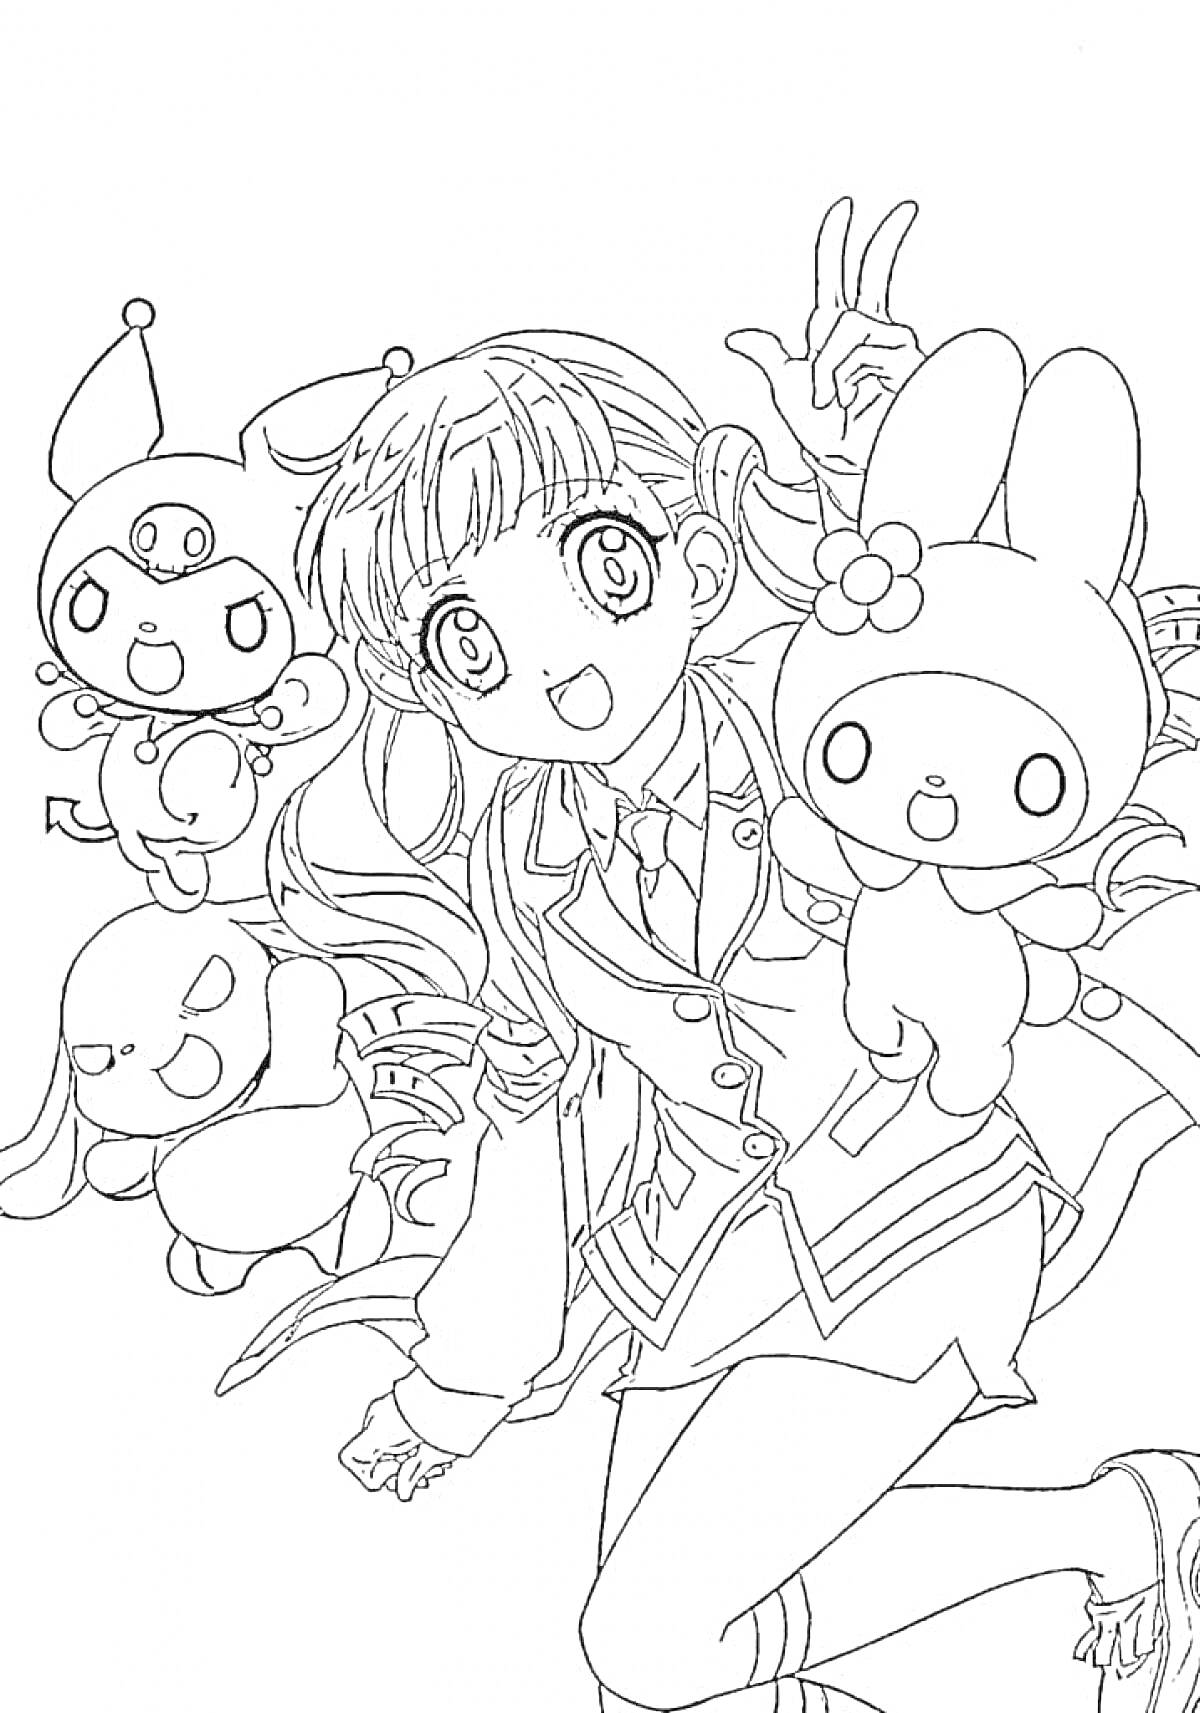 Раскраска Девочка и персонажи Куроми и Мелоди в школьной форме с прибавочками в руках